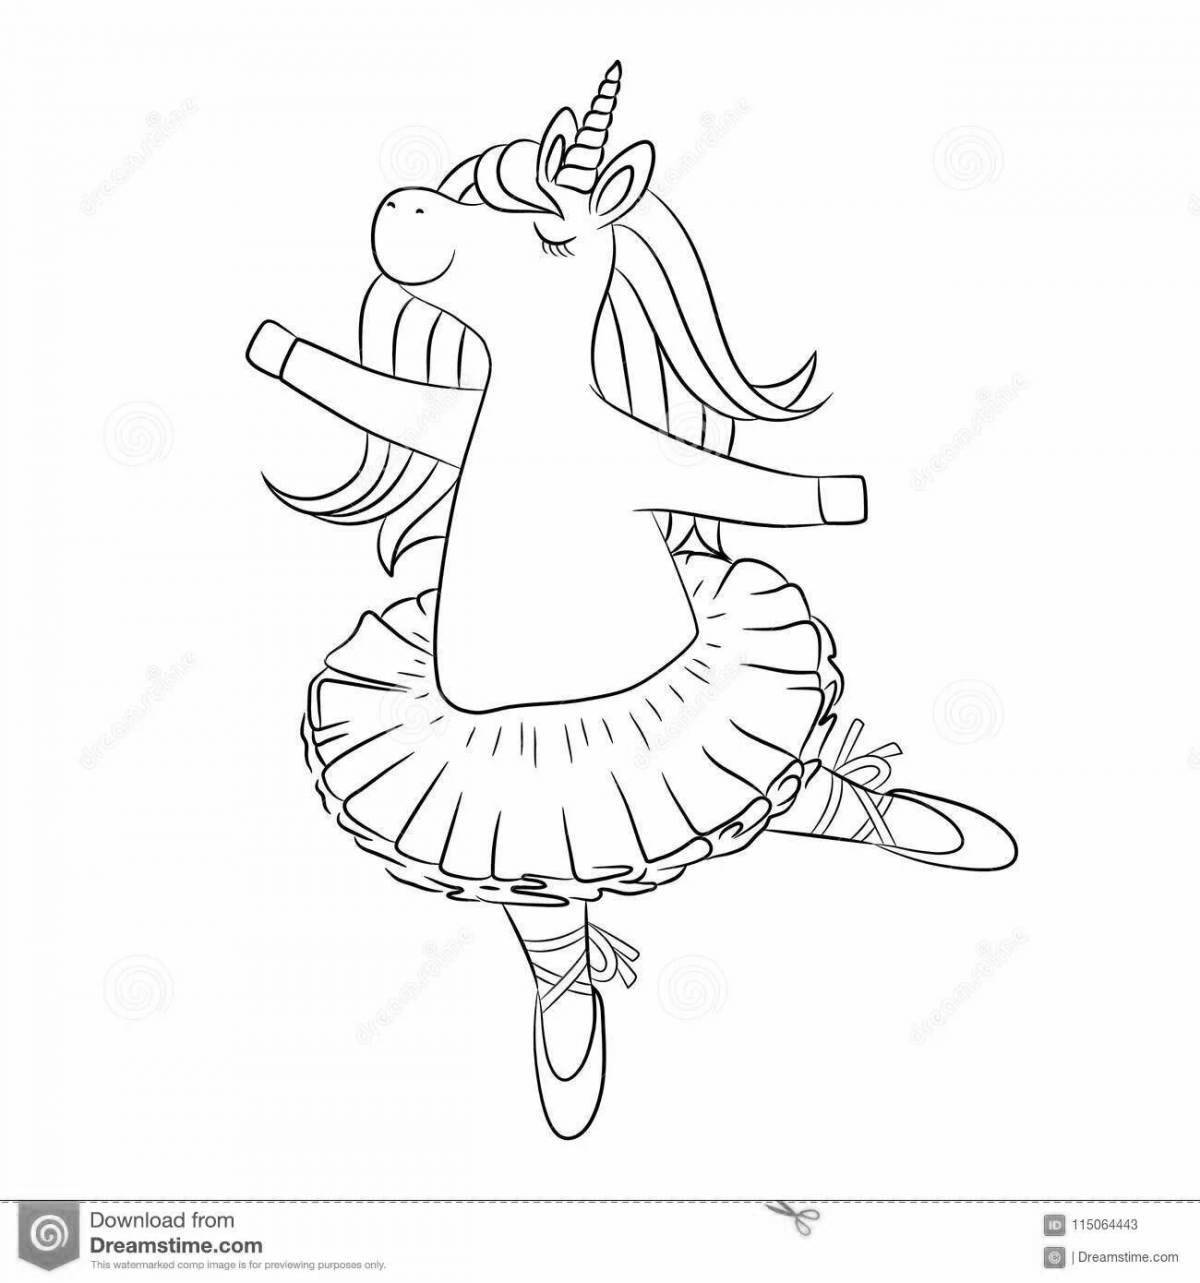 Joyful ballerina bunny coloring book